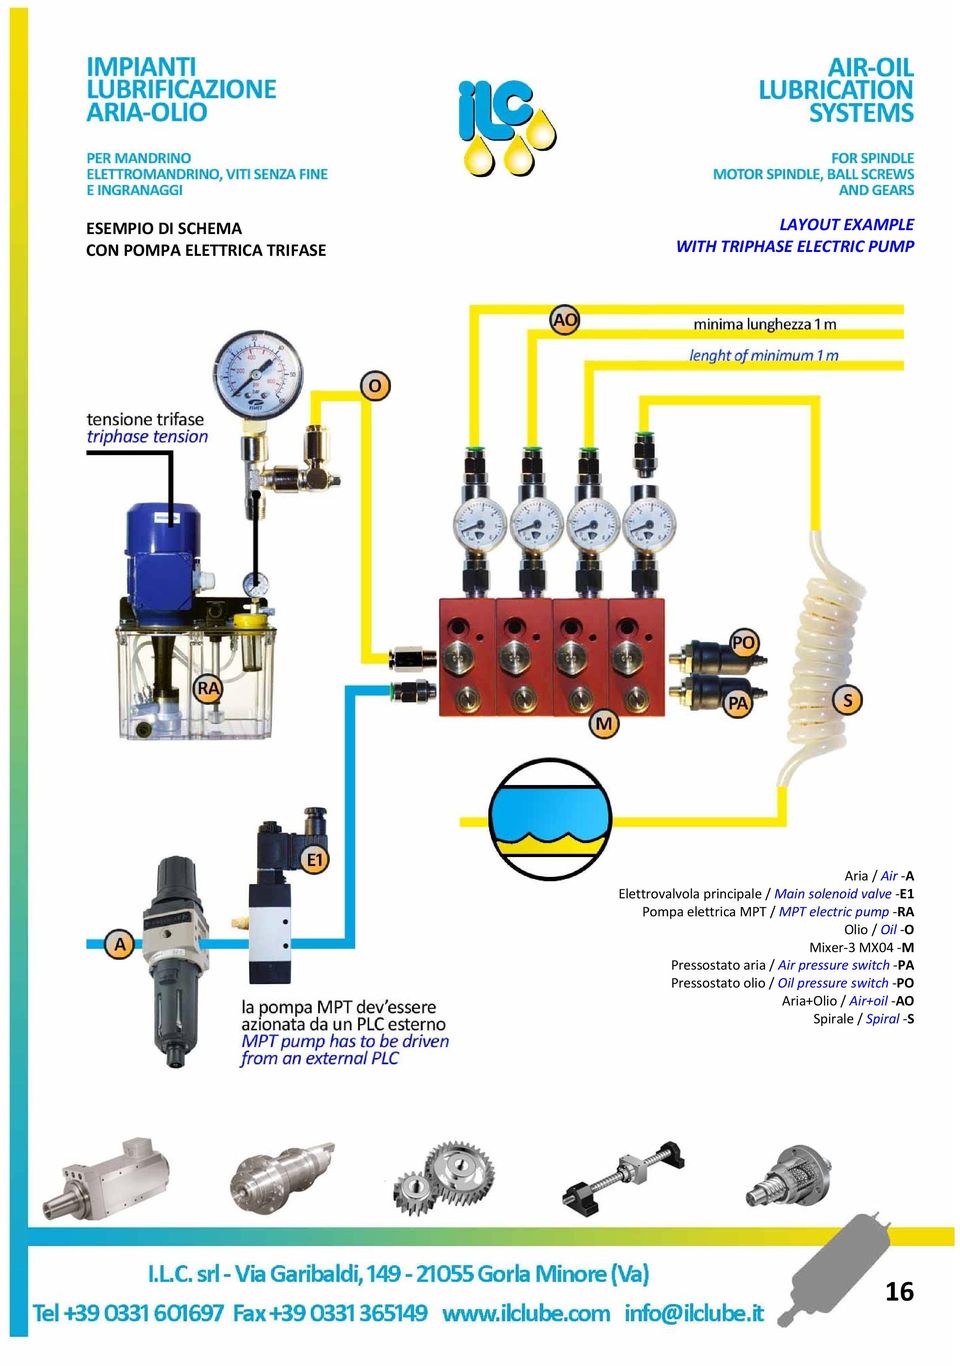 MPT / MPT electric pump RA Olio / Oil O Mixer 3 MX04 M Pressostato aria / Air pressure